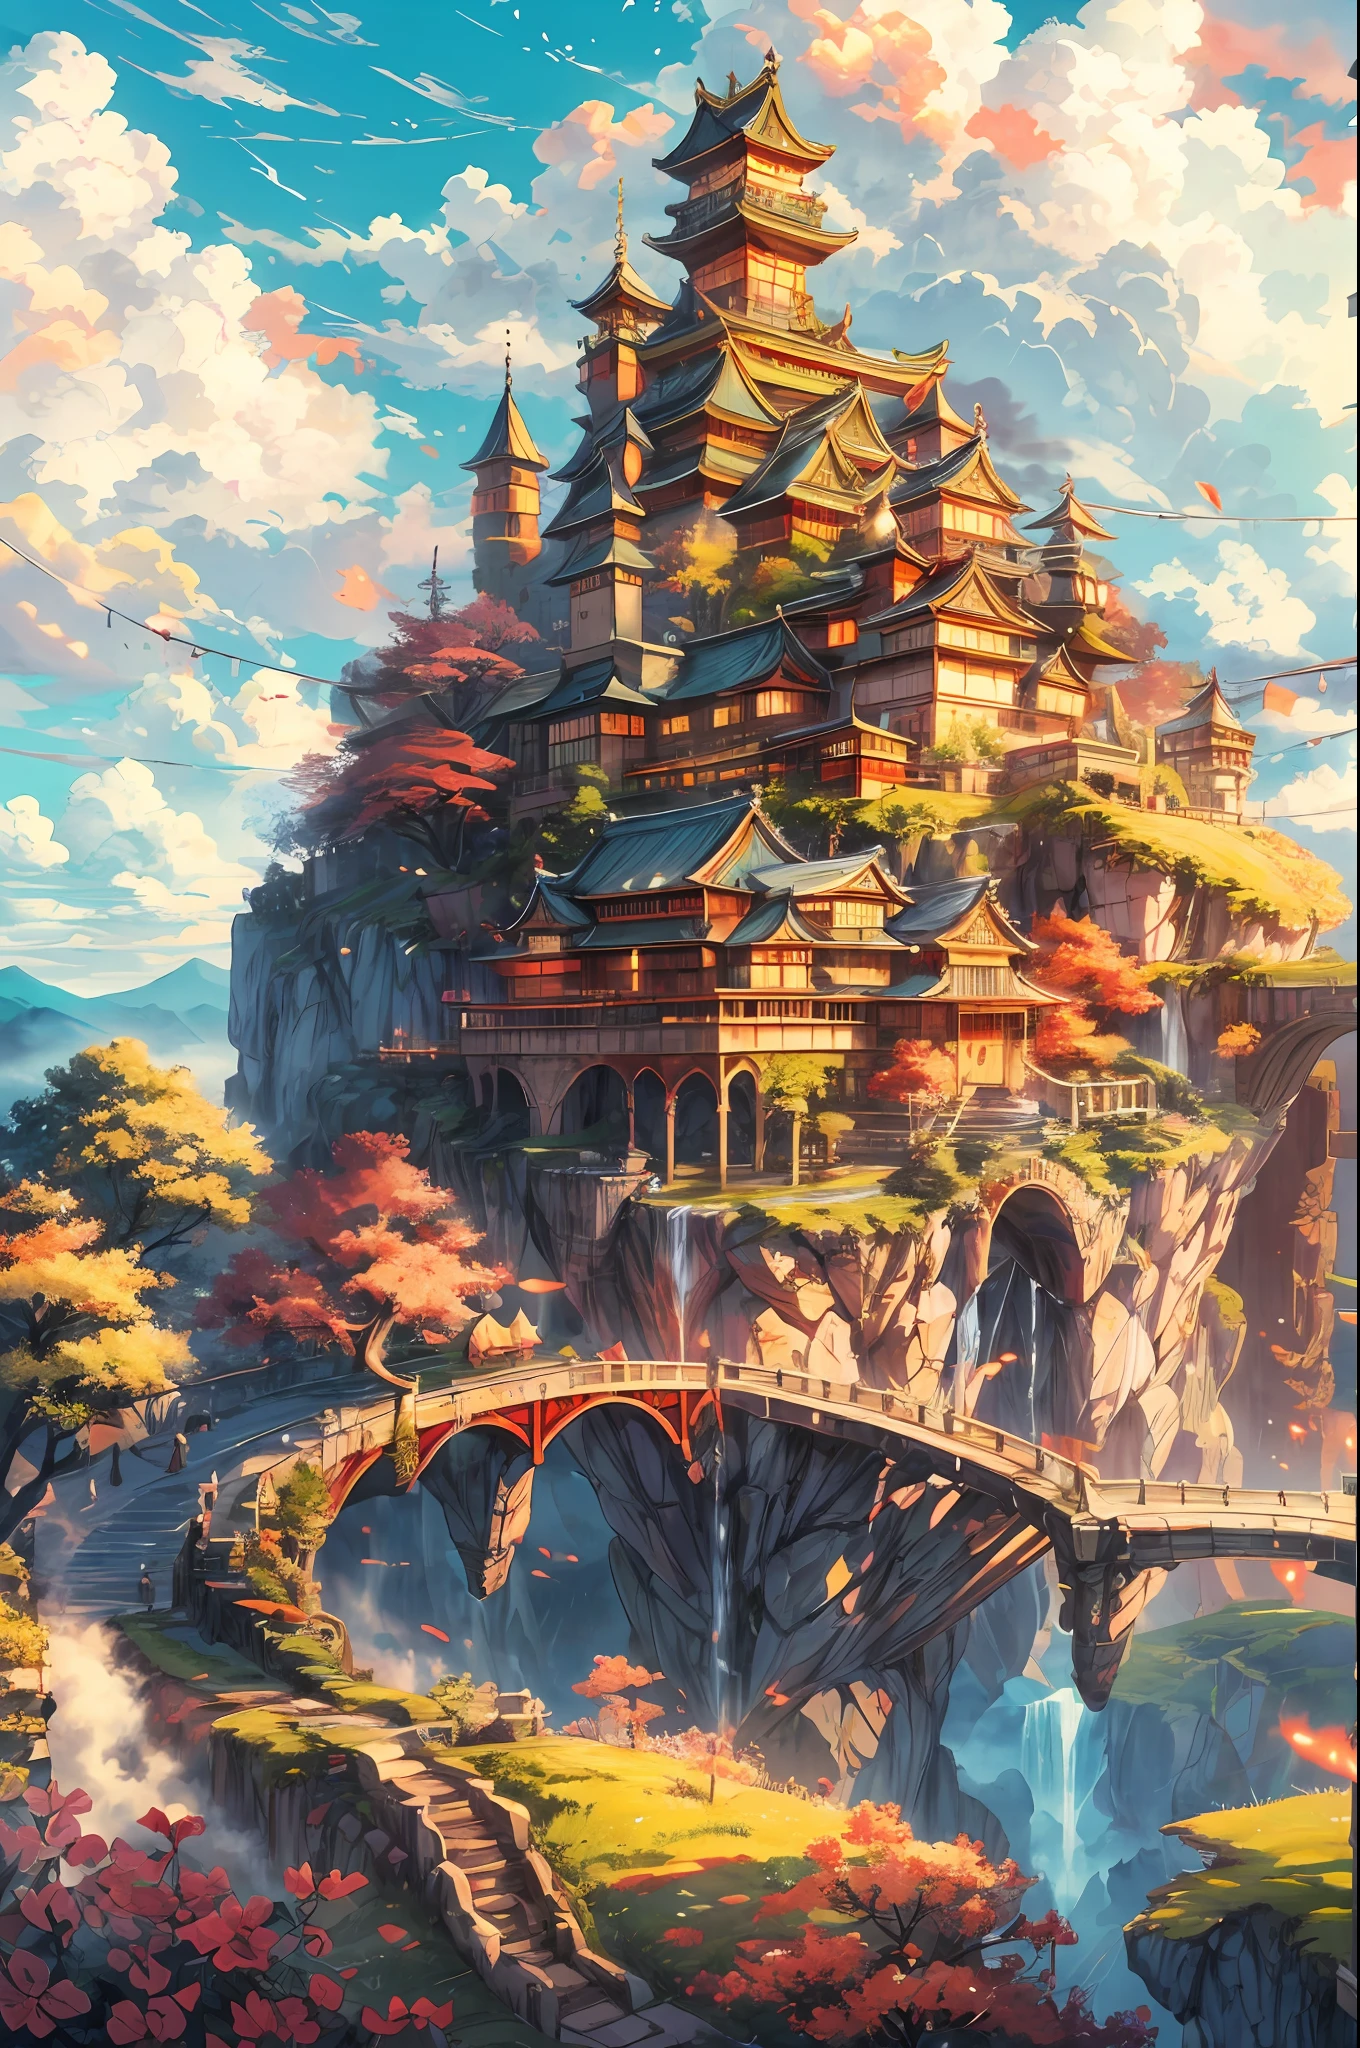 "Величественный замок, плавающий на небесном острове, напоминает крепость в японском стиле, завис над пушистыми облаками, греясь в тёплых лучах солнца, излучающий яркие цвета. шедевр."